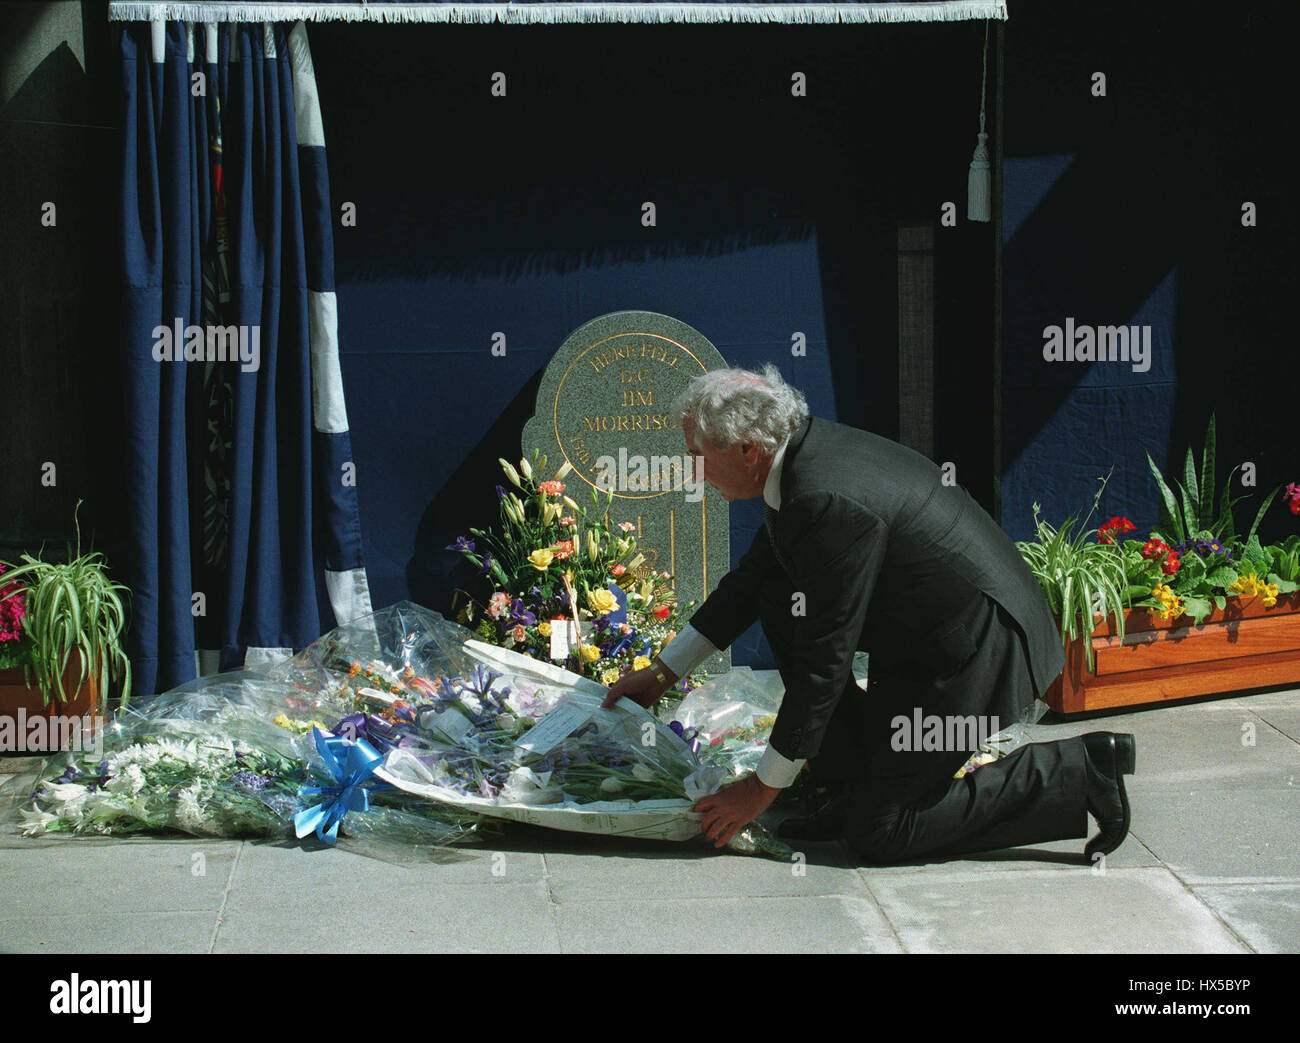 MICHAEL WINNER LAYS FLOWERS AT MEMORIAL TO D.C. JIM MORRISON 27 April 1994 Stock Photo